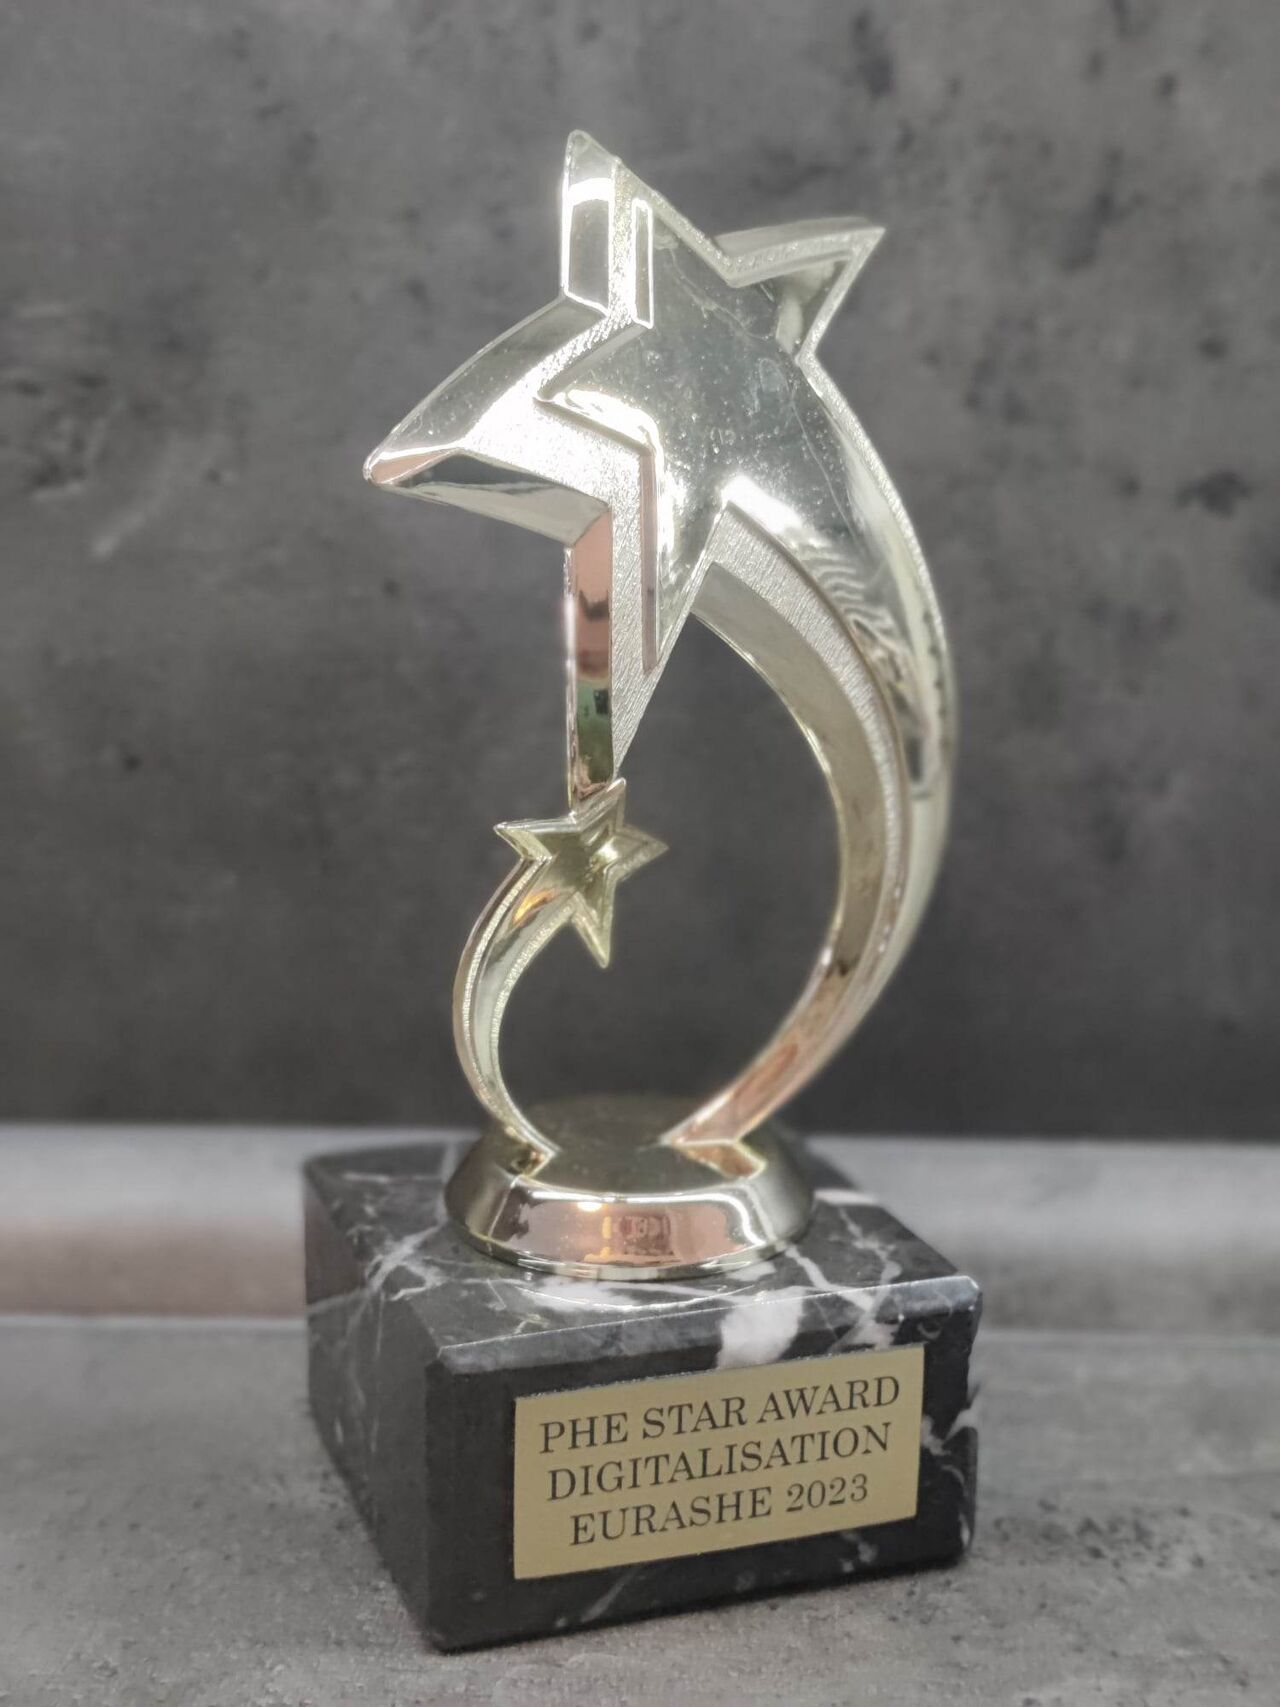 eurashe-award.jfif